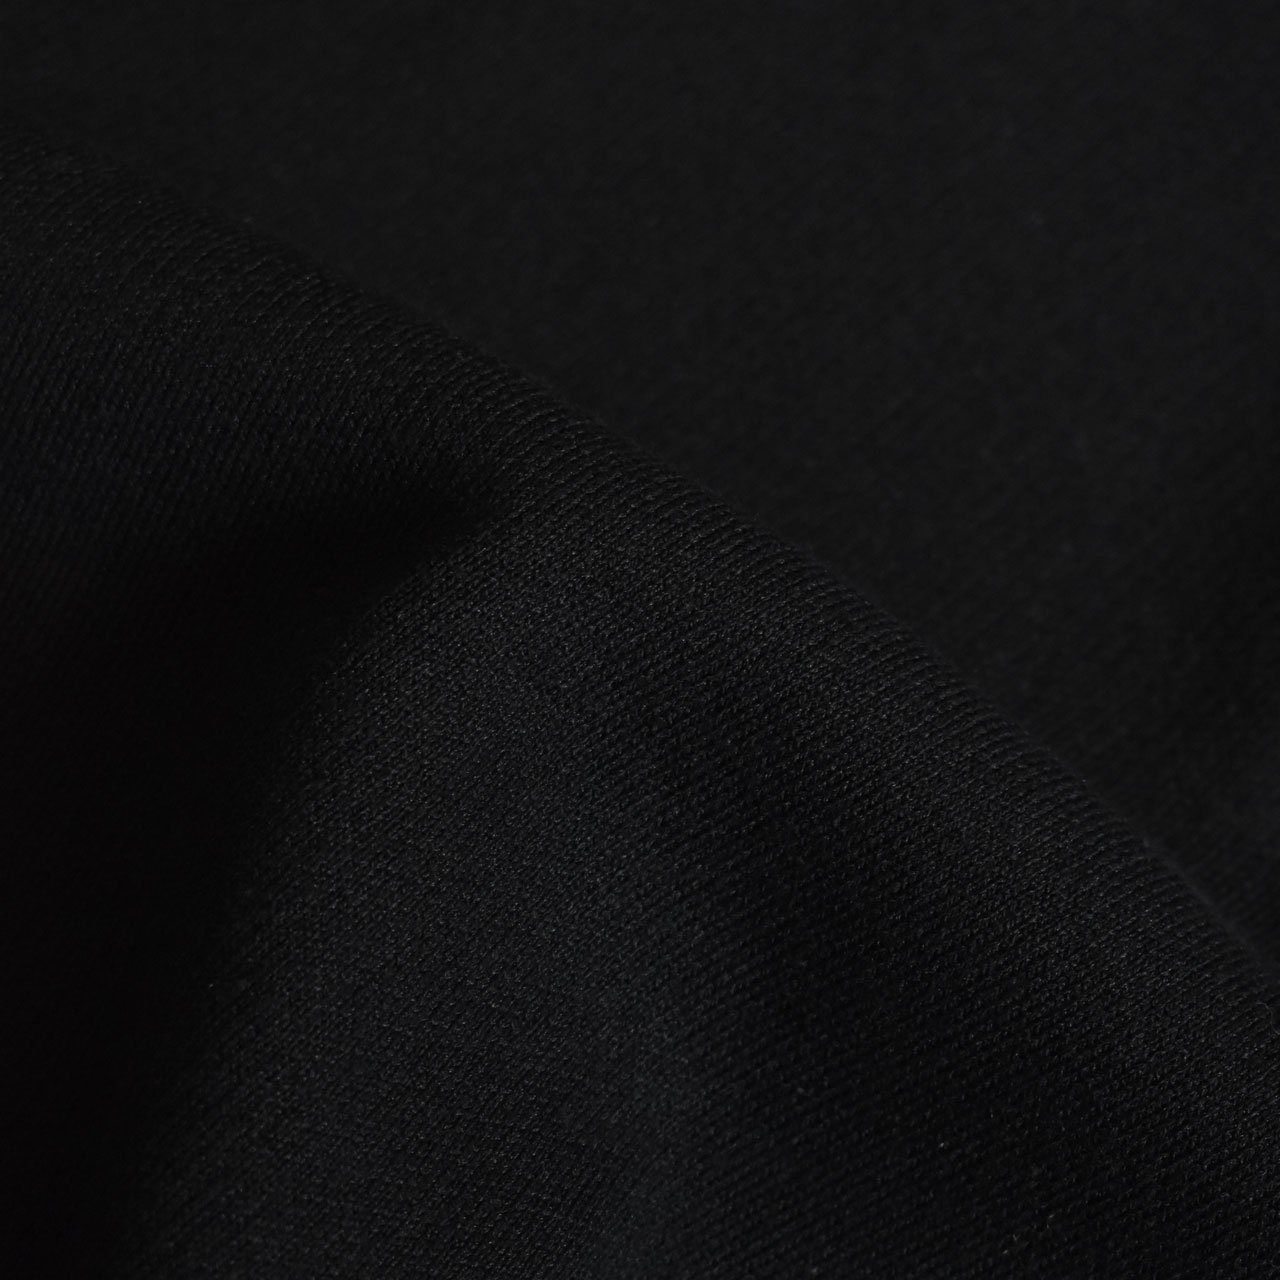 nakedgauge(ネイキッドゲージ) 24SS/春夏
B.SWEATER S/S
NG24S-07SW02C
ニットTシャツ
半袖Tシャツ